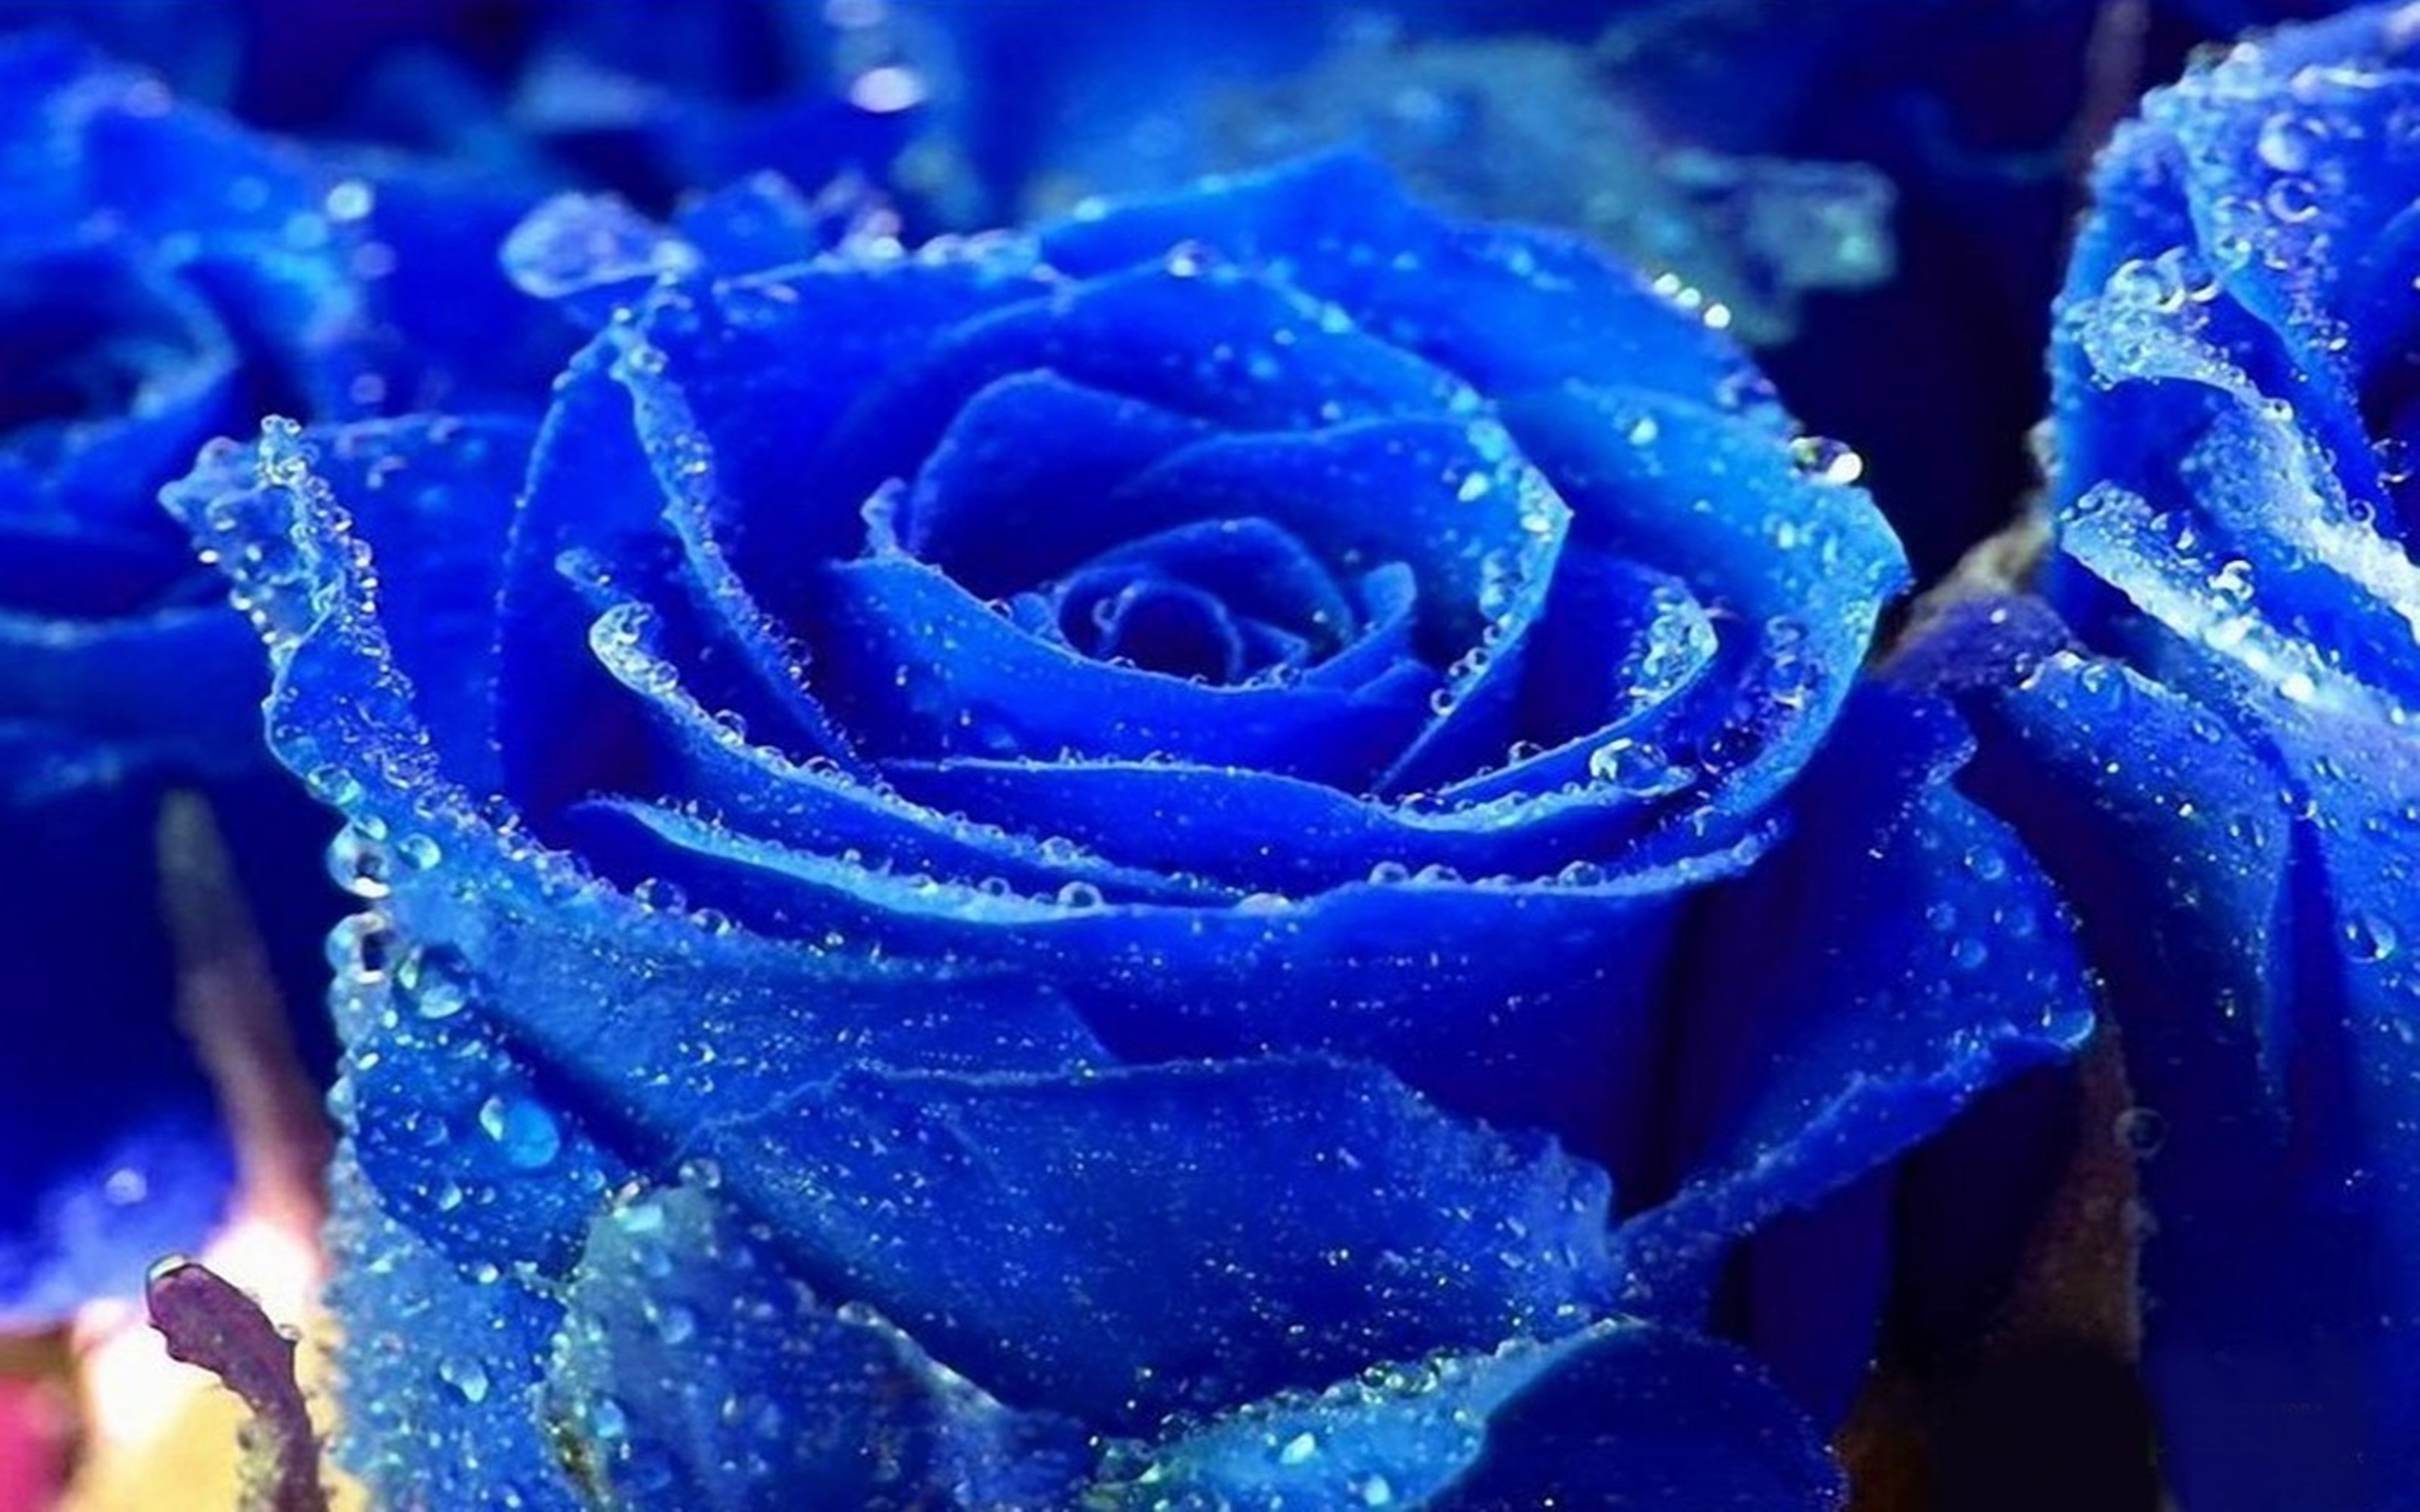 rose colour wallpaper,rose,garden roses,blue,blue rose,flower